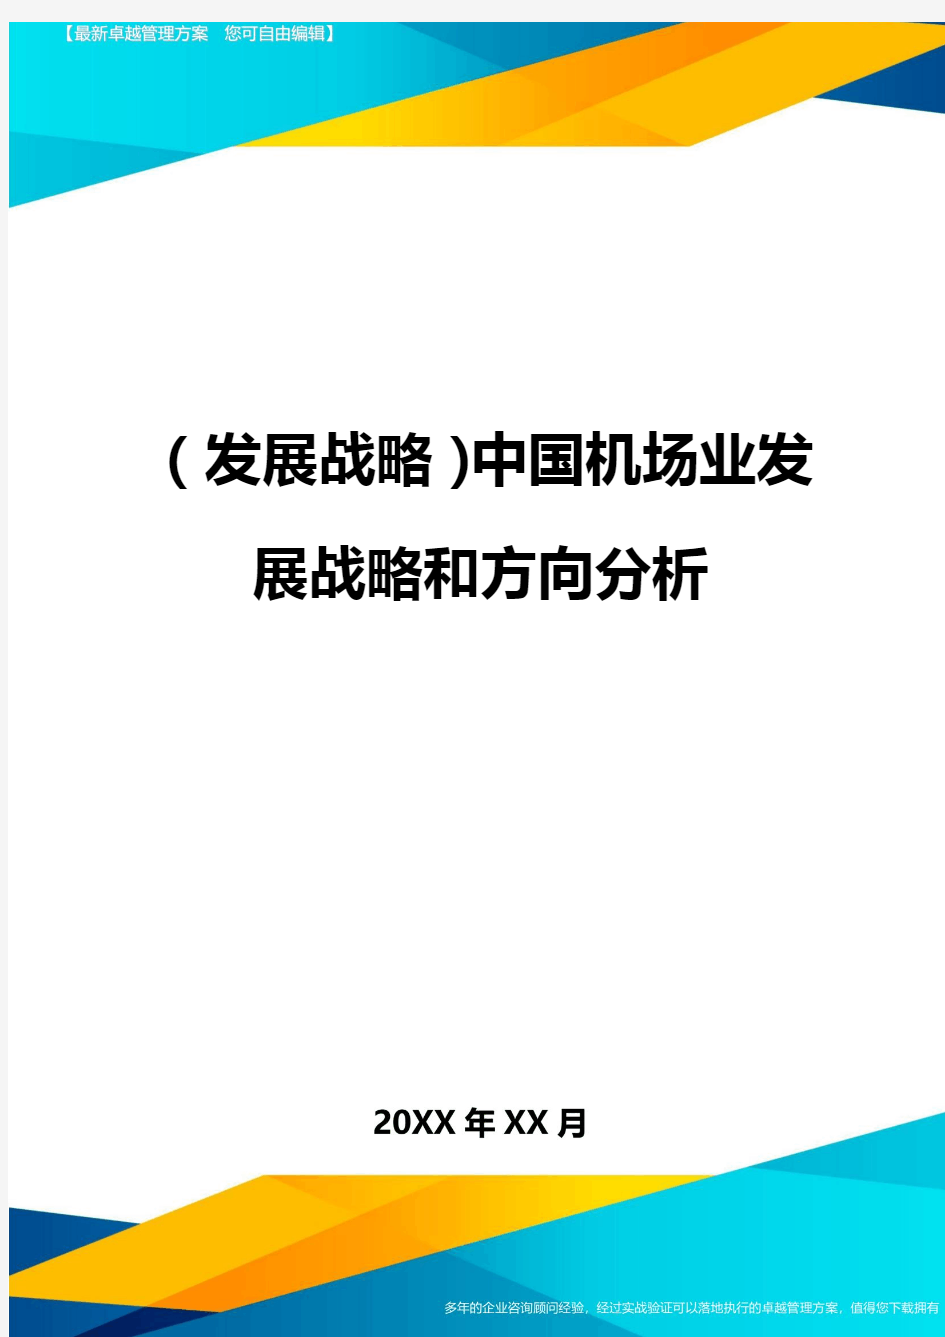 (发展战略)中国机场业发展战略和方向分析最全版